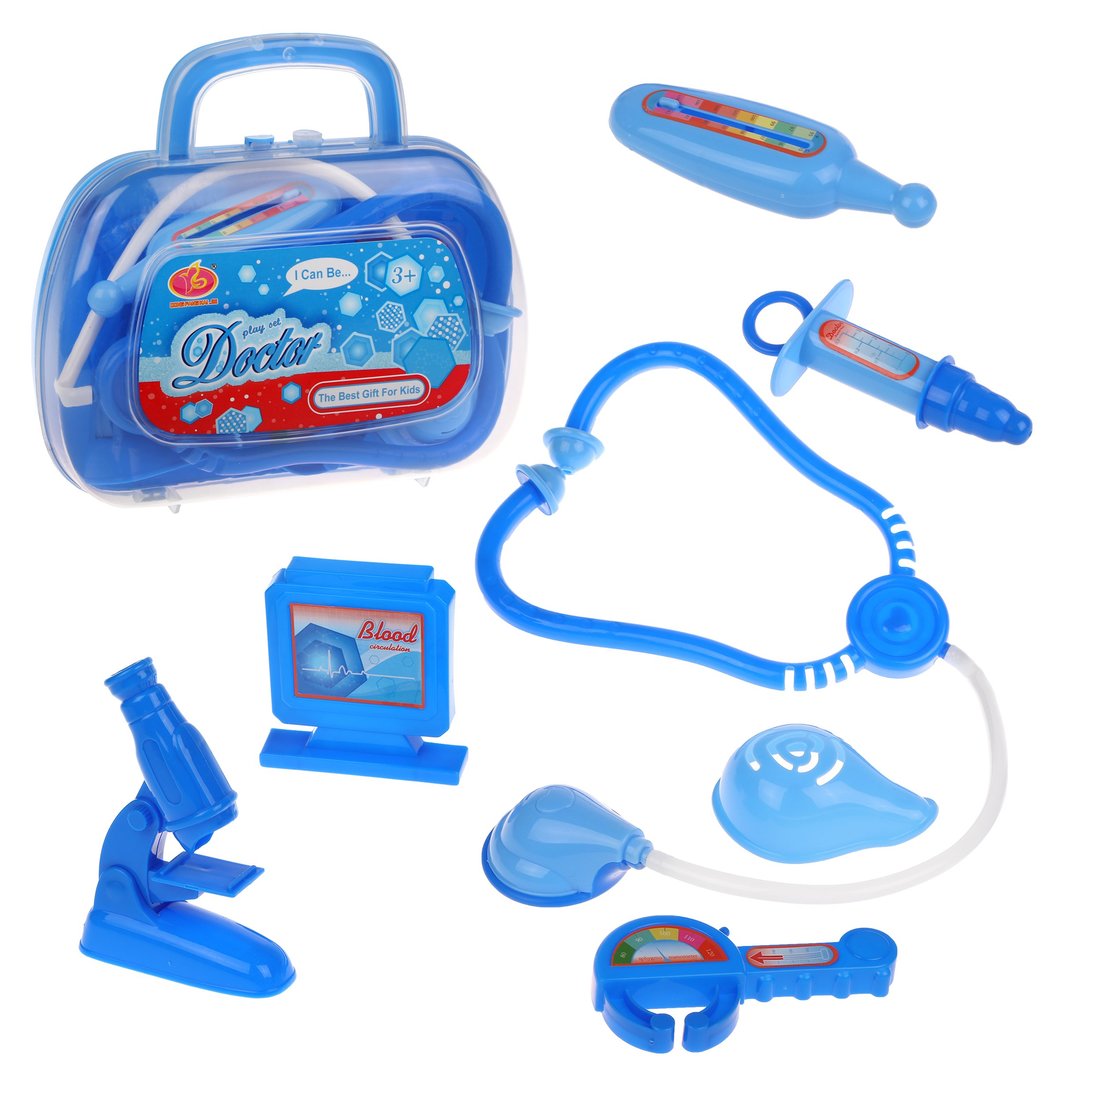 Игровой набор Доктор Наша Игрушка развивающий для детей 8 предметов голубой - фото 1